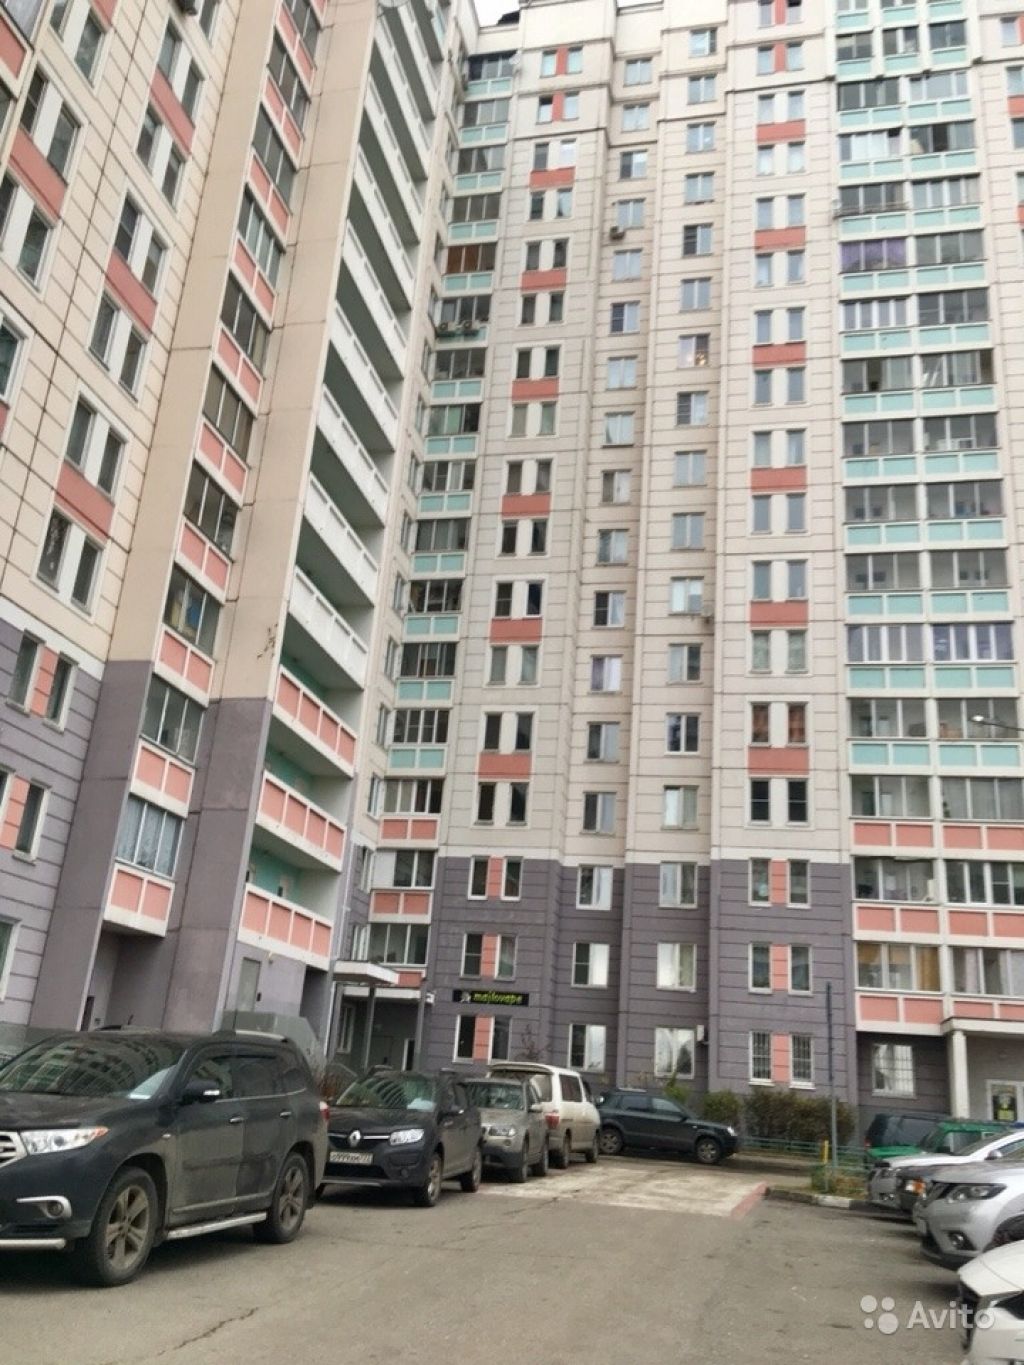 Продам квартиру 1-к квартира 39 м² на 12 этаже 17-этажного панельного дома в Москве. Фото 1